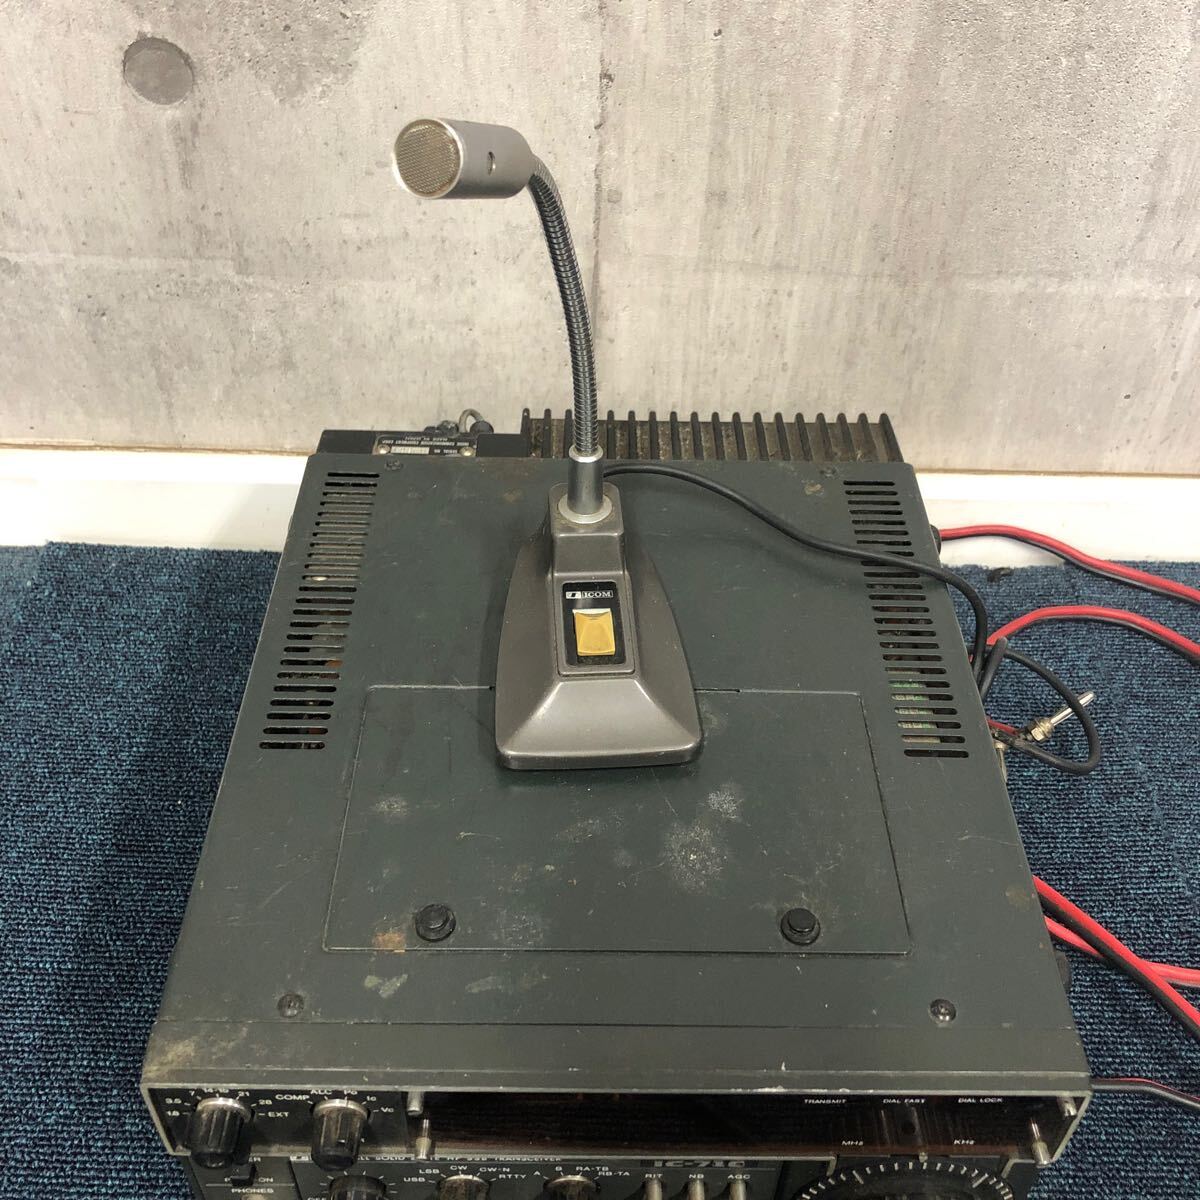 [..ec]ICOM Icom рация HF TRANSCEIVER IC-710 электризация работоспособность не проверялась радиолюбительская связь машина Mike есть текущее состояние товар 